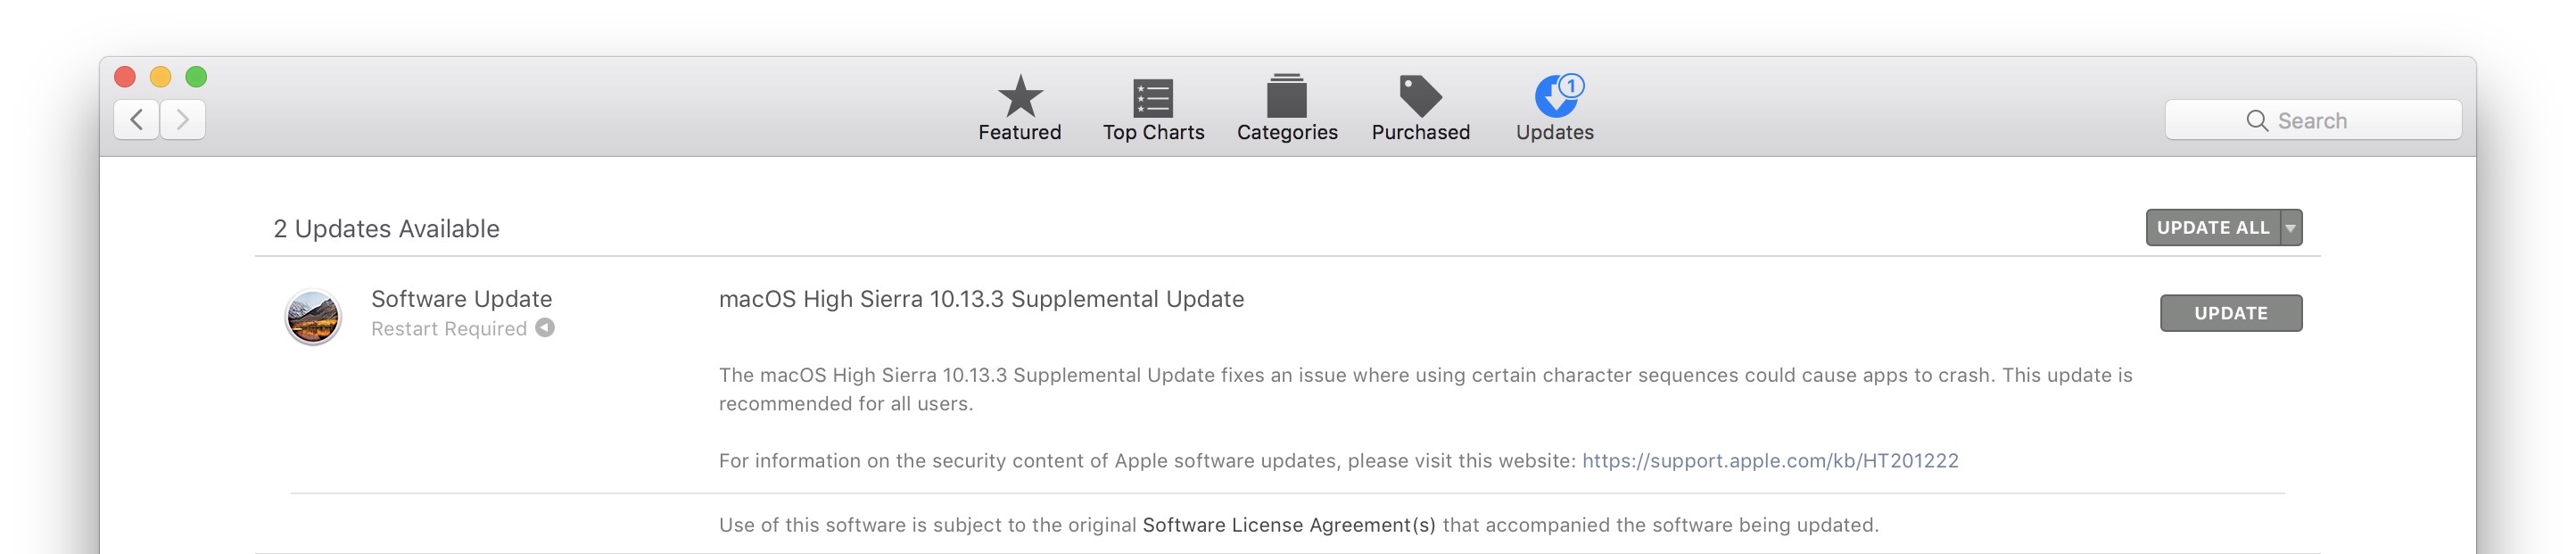 macOS High Sierra 10.13.3 Supplemental Update [Mac Security Update]